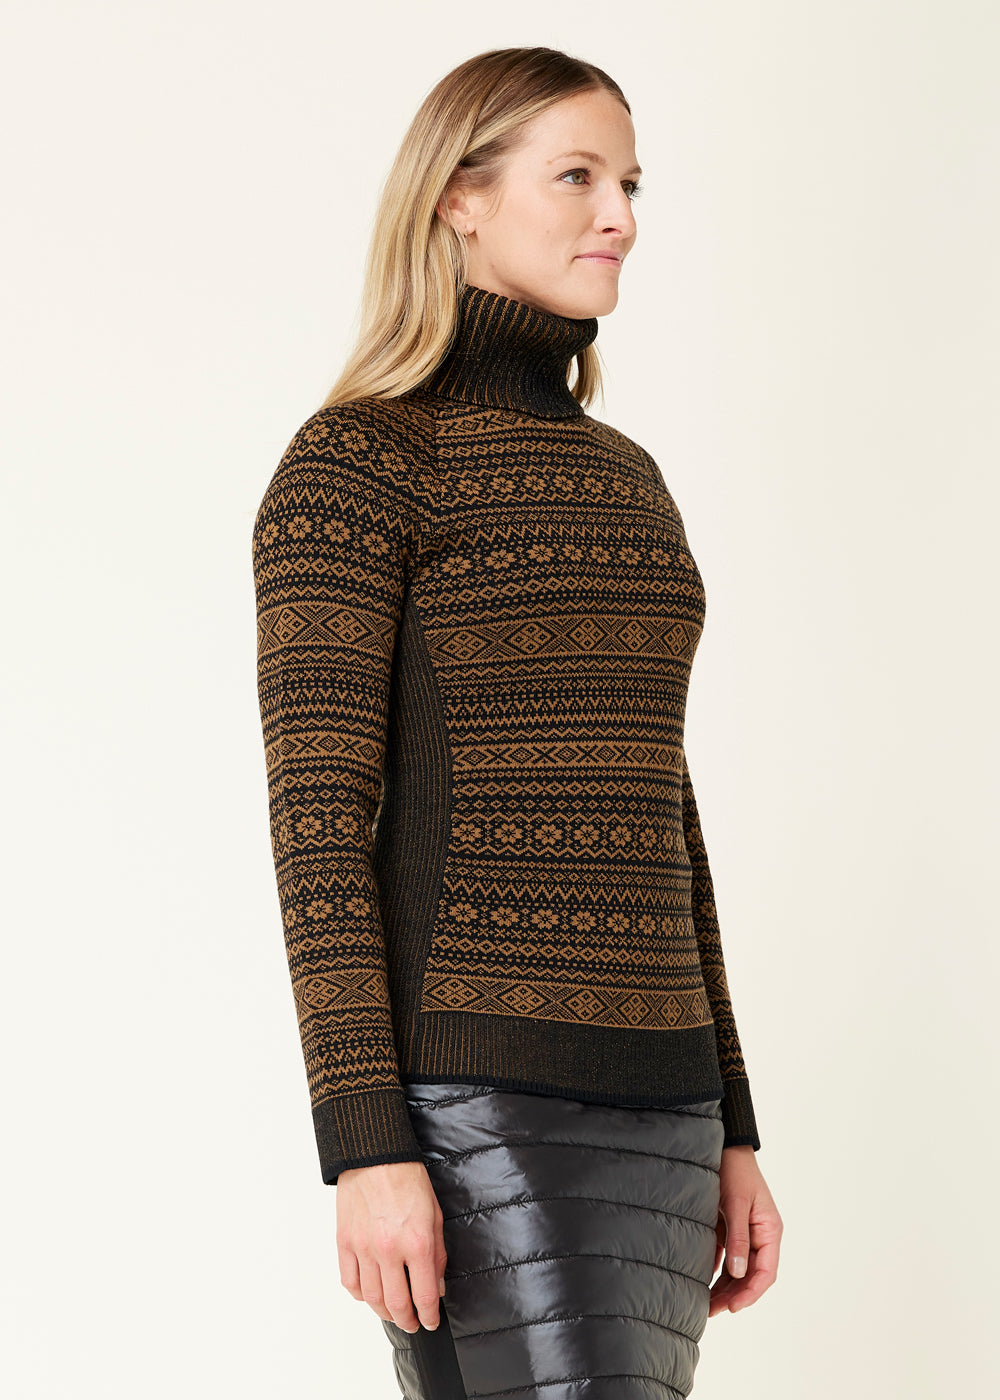 Krimson Klover Christiana Sweater - Women's